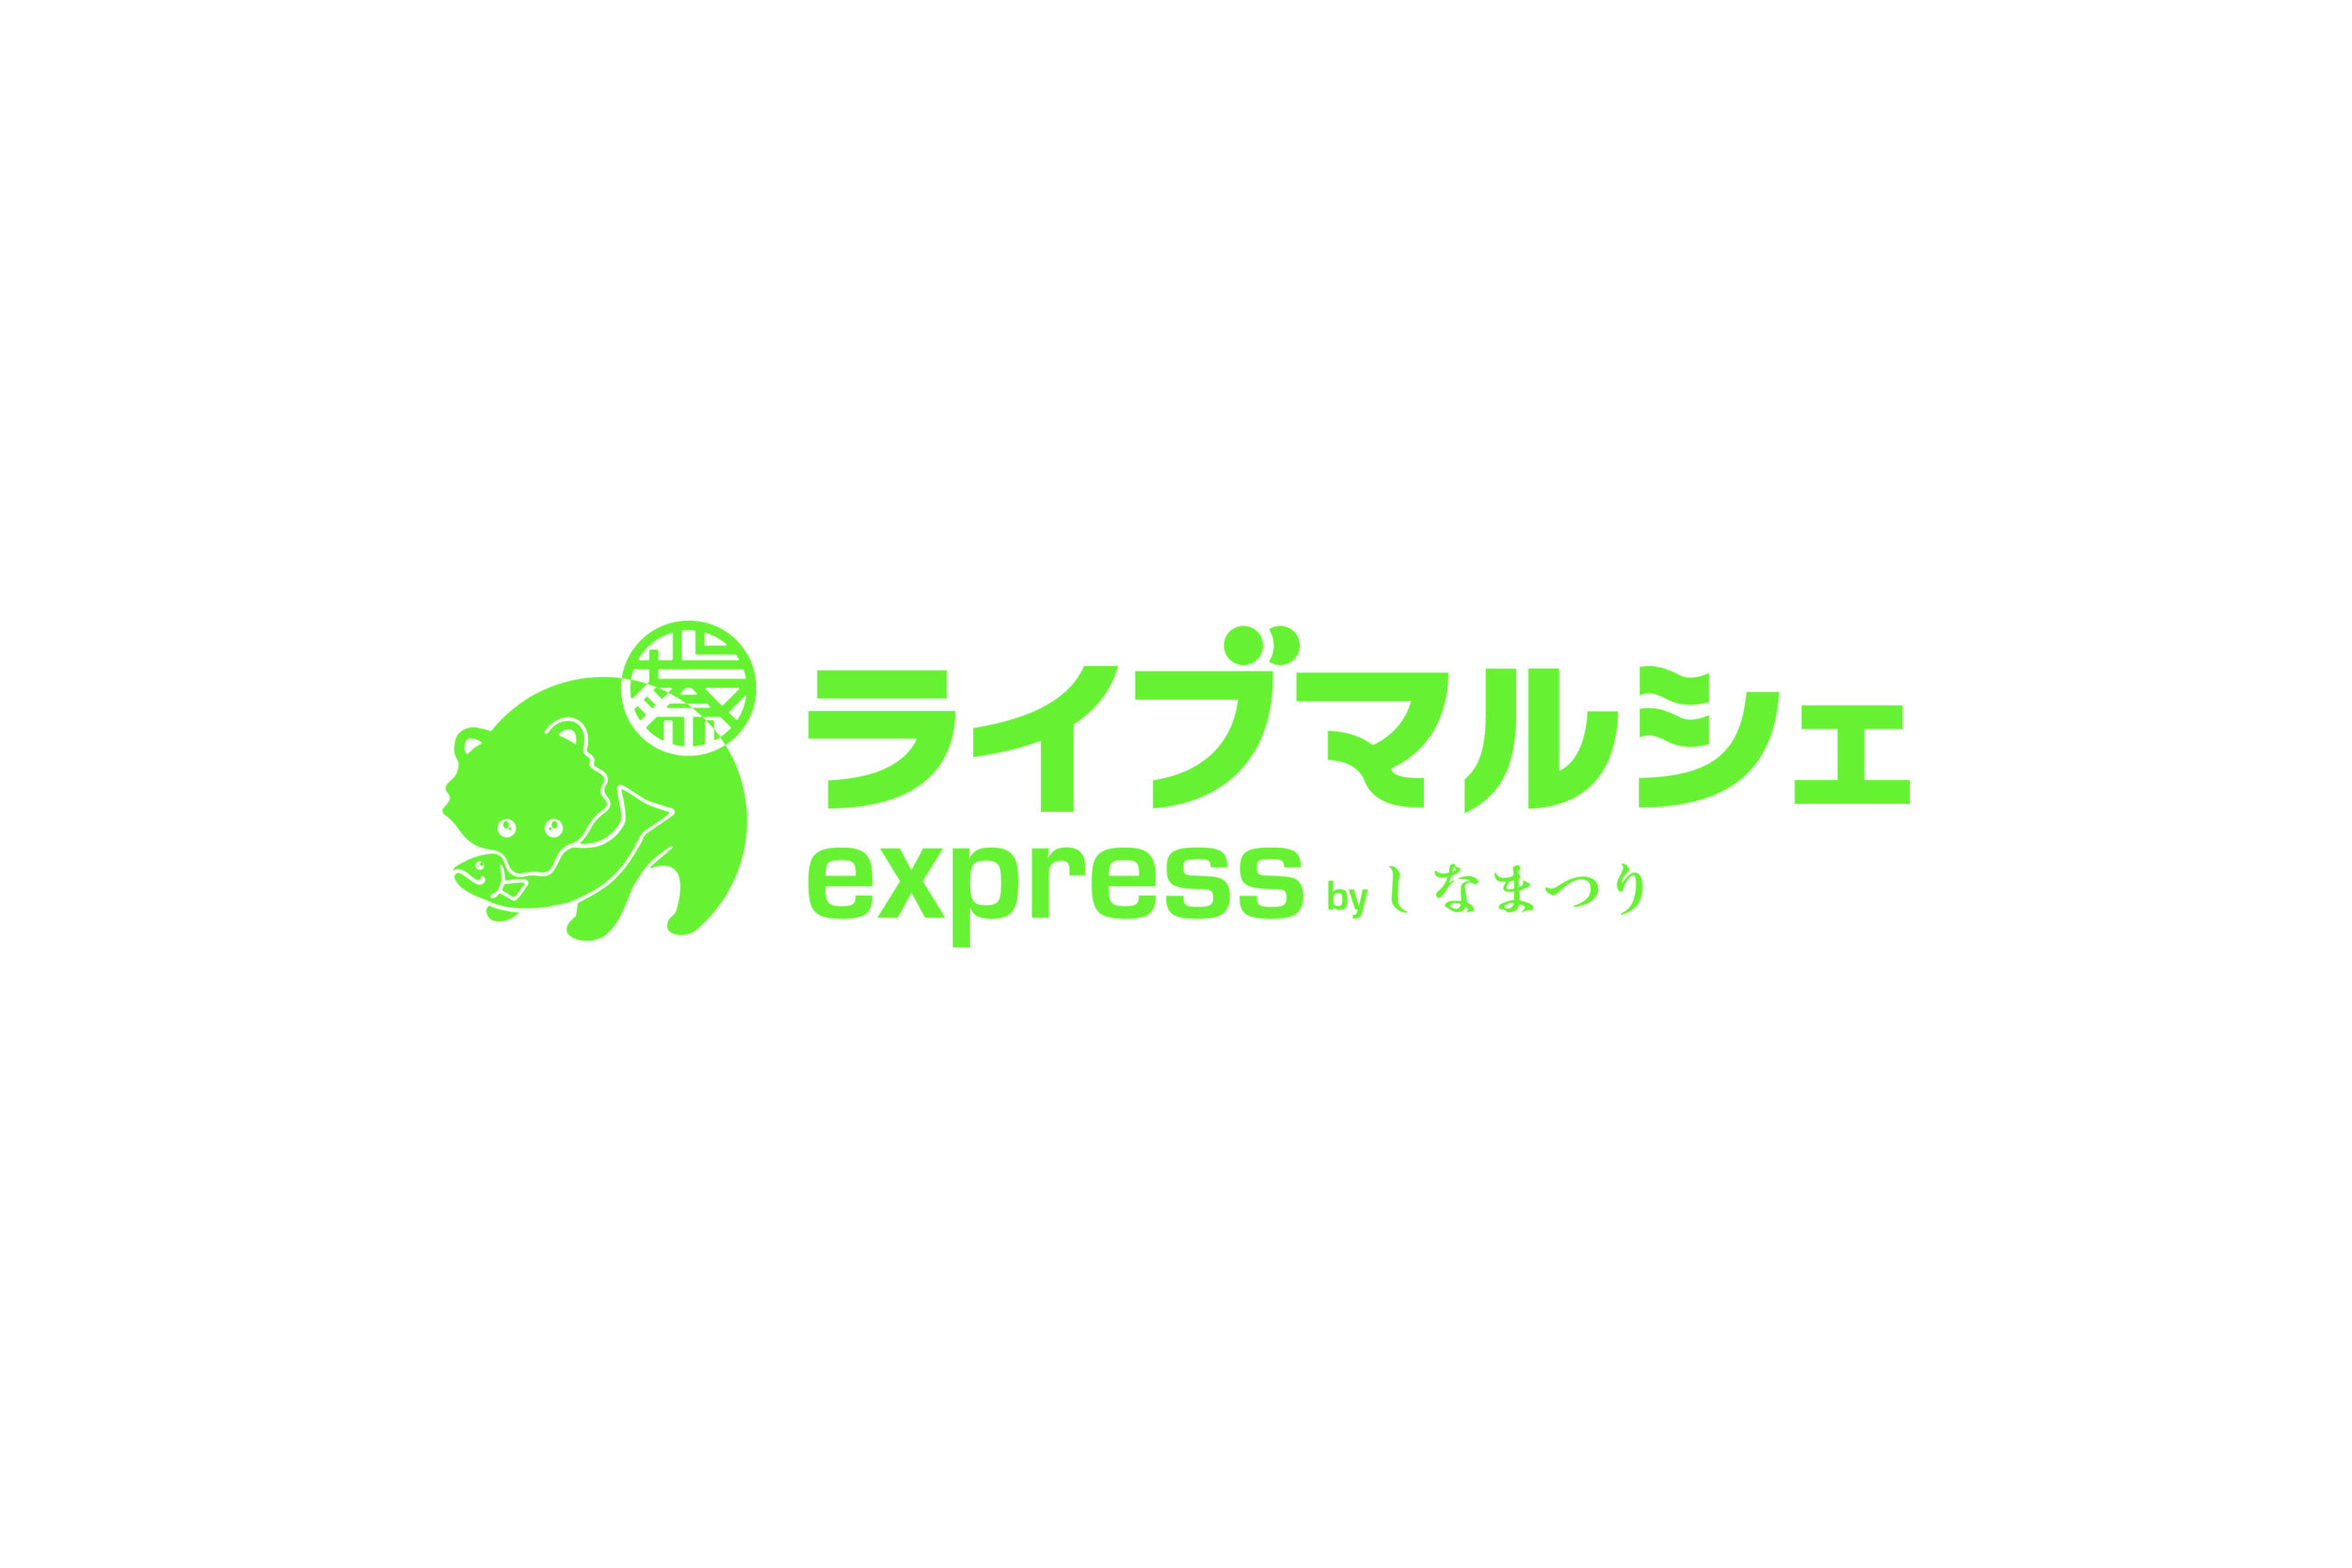 「ライブマルシェexpress by しなまつり」リニューアルオープンのお知らせ